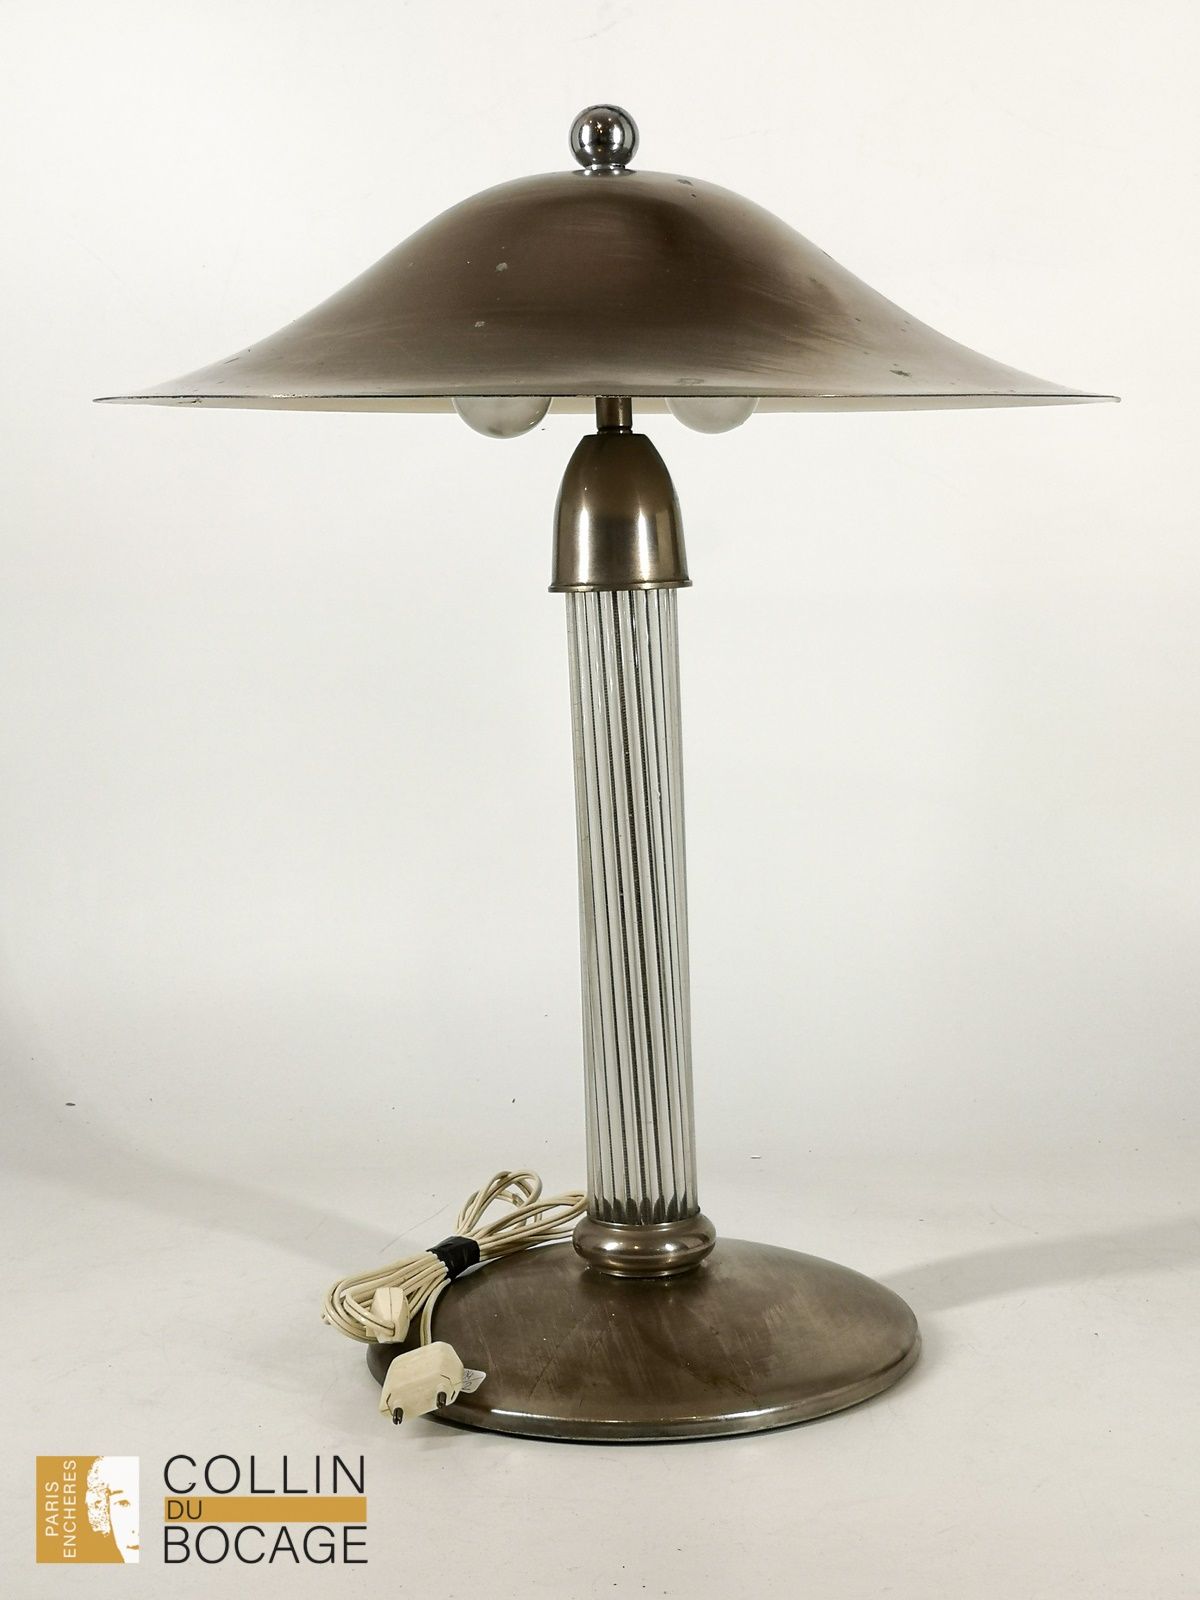 Null Lampe "Strahl"
Metall
Epoche des Art Déco
H: 53 cm, D: 44 cm
(Oxidationsspu&hellip;